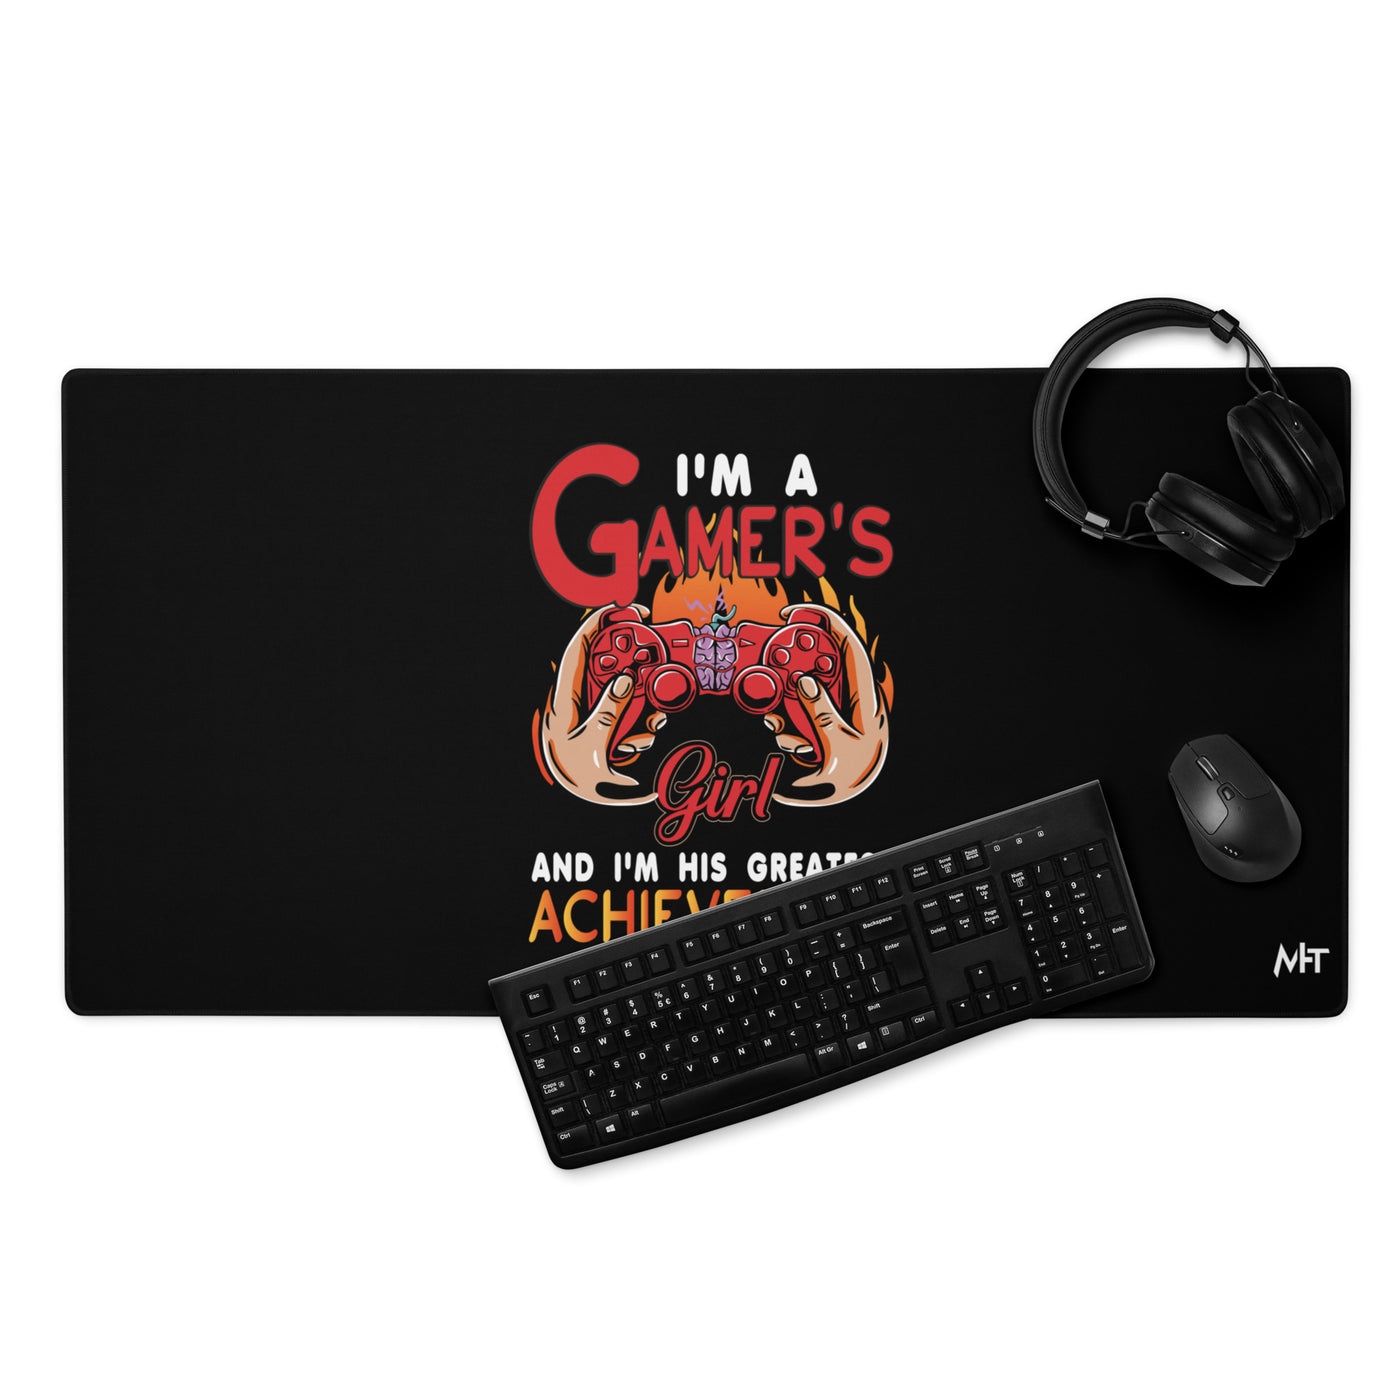 I am a Gamer's girl, I am his Greatest Achievement - Desk Mat